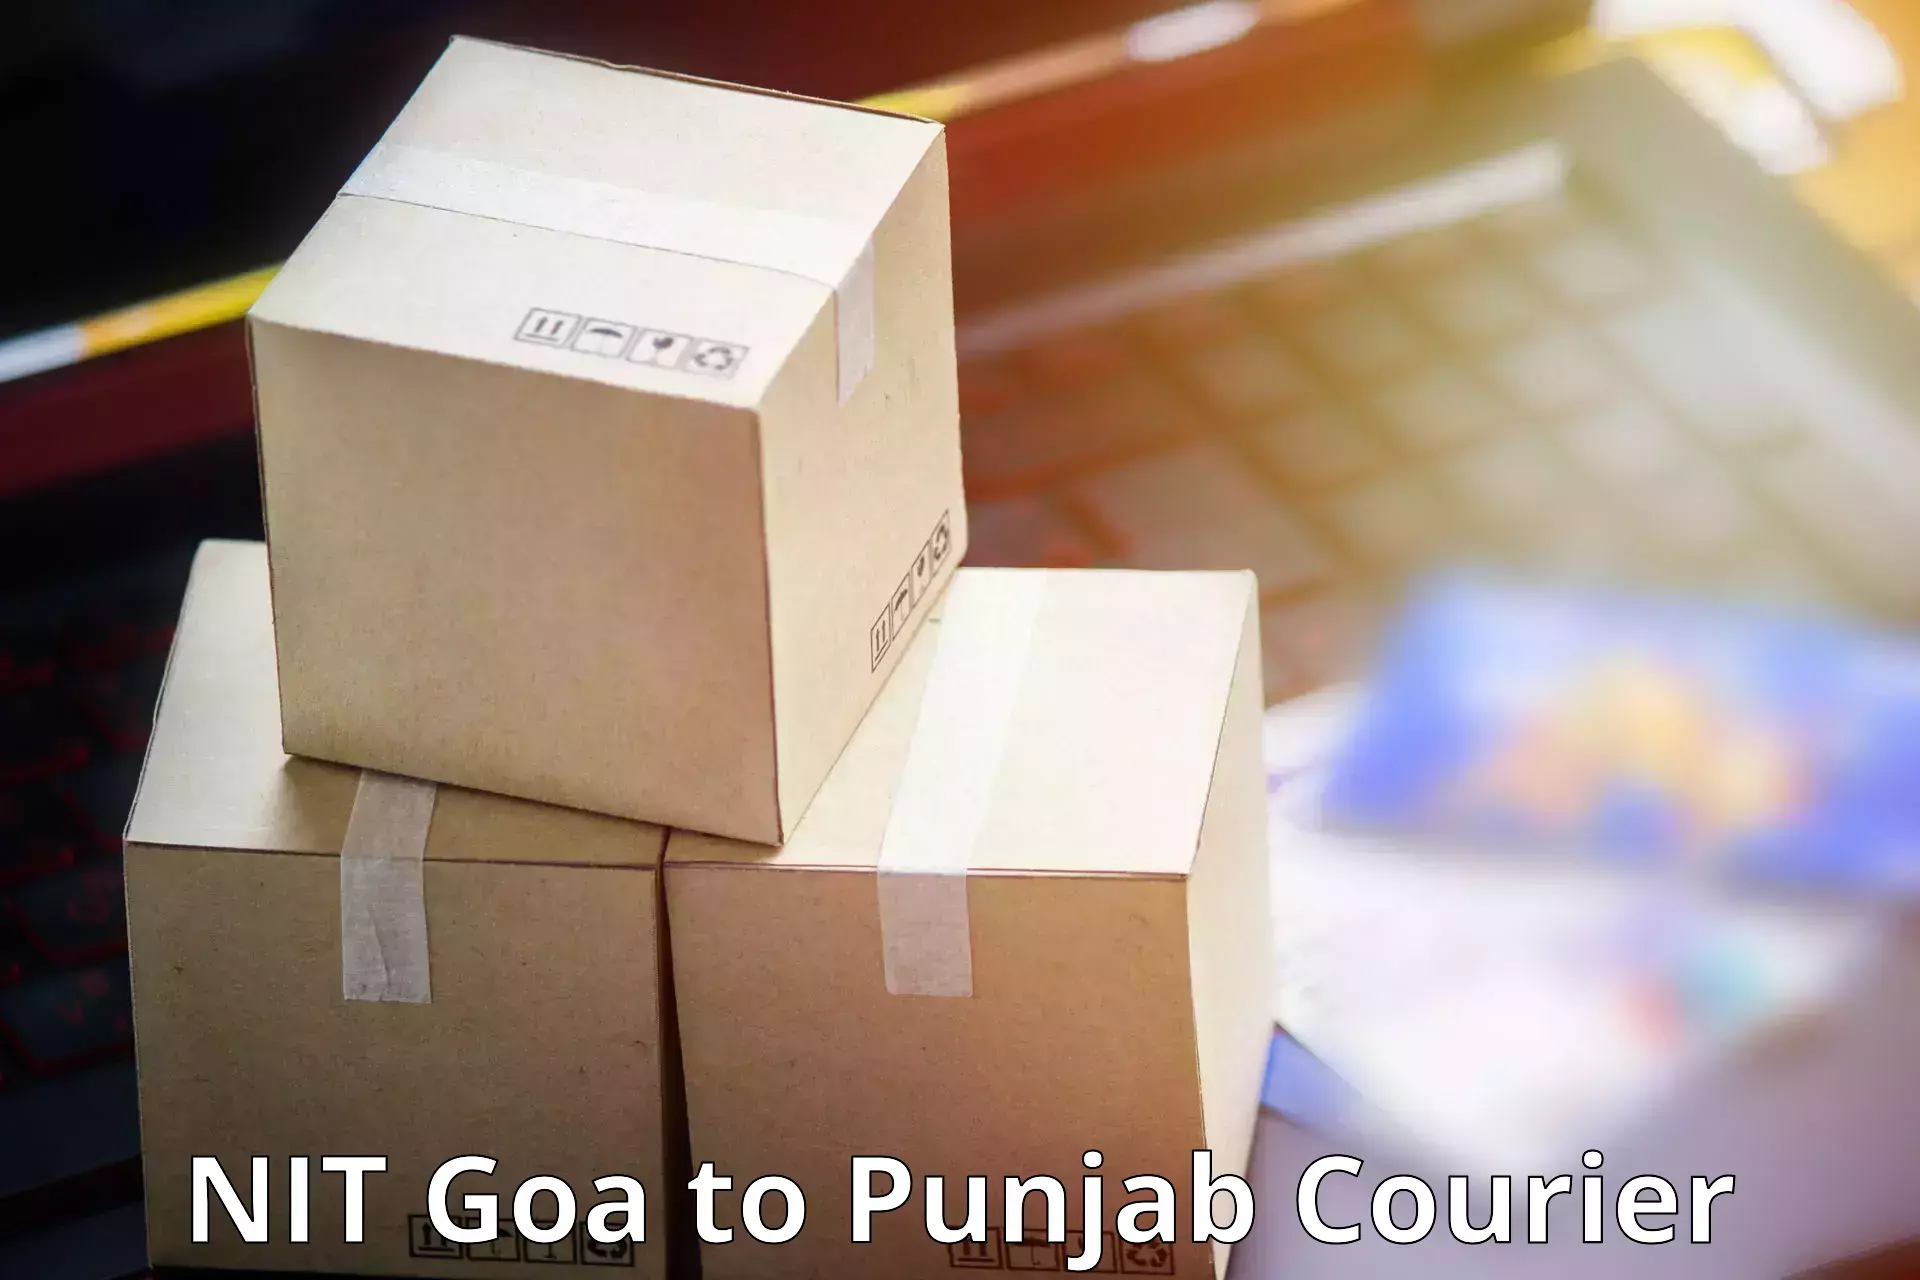 Affordable parcel service NIT Goa to Jalalabad